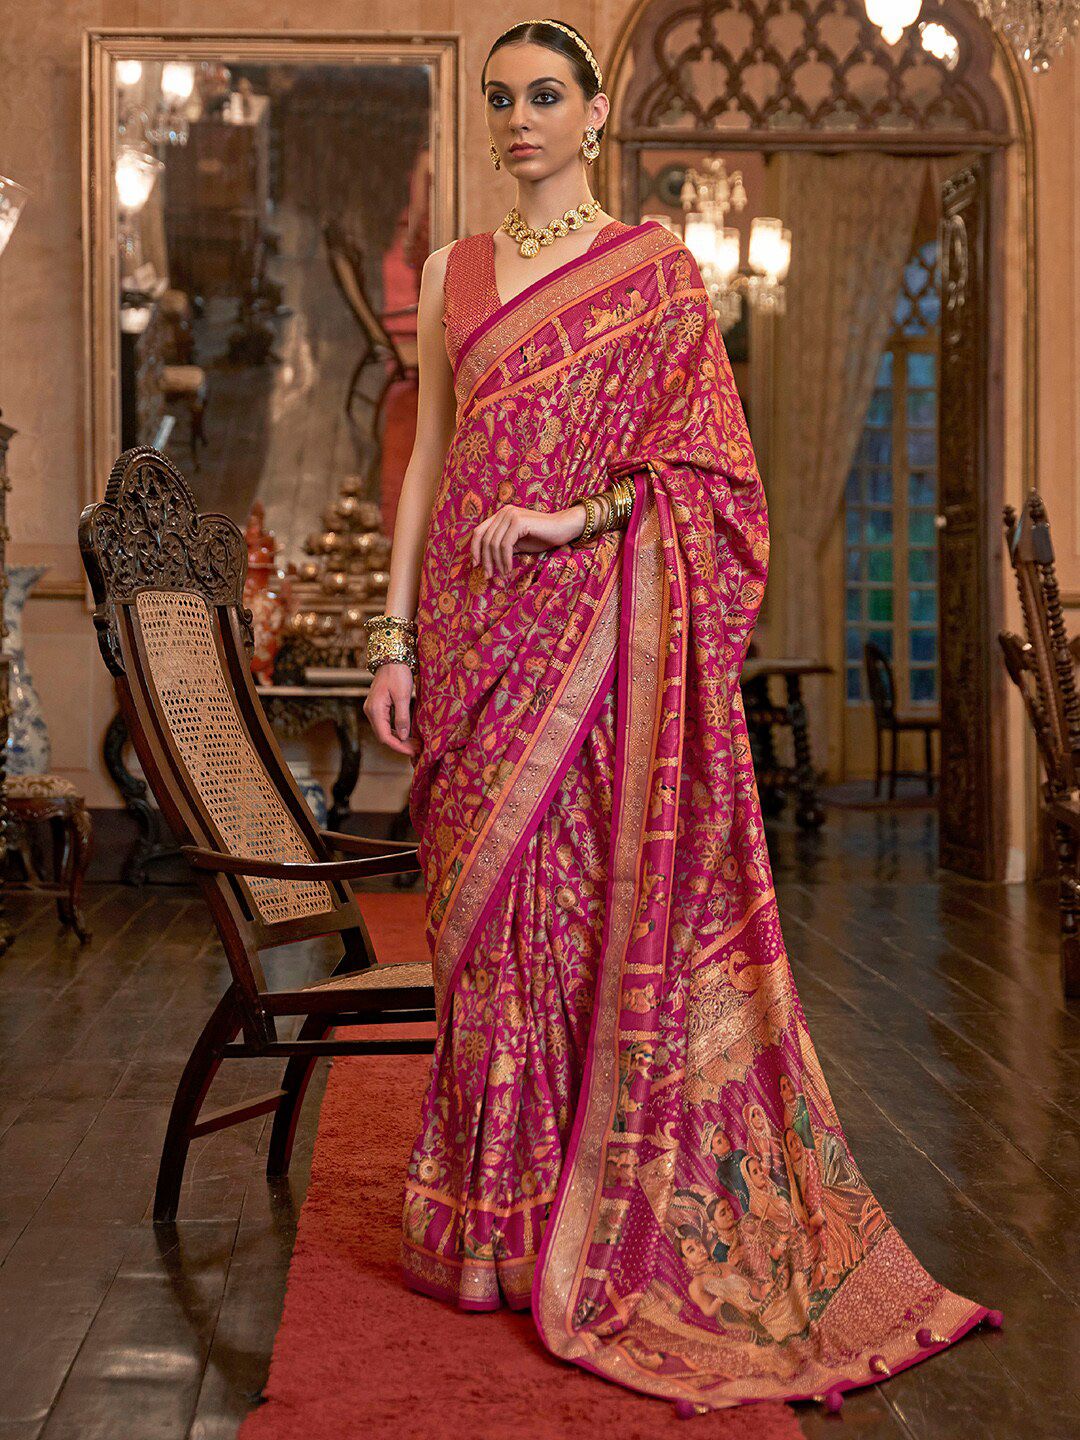 Anouk Pink & Green Ethnic Motifs Beads and Stones Silk Blend Banarasi Saree Price in India